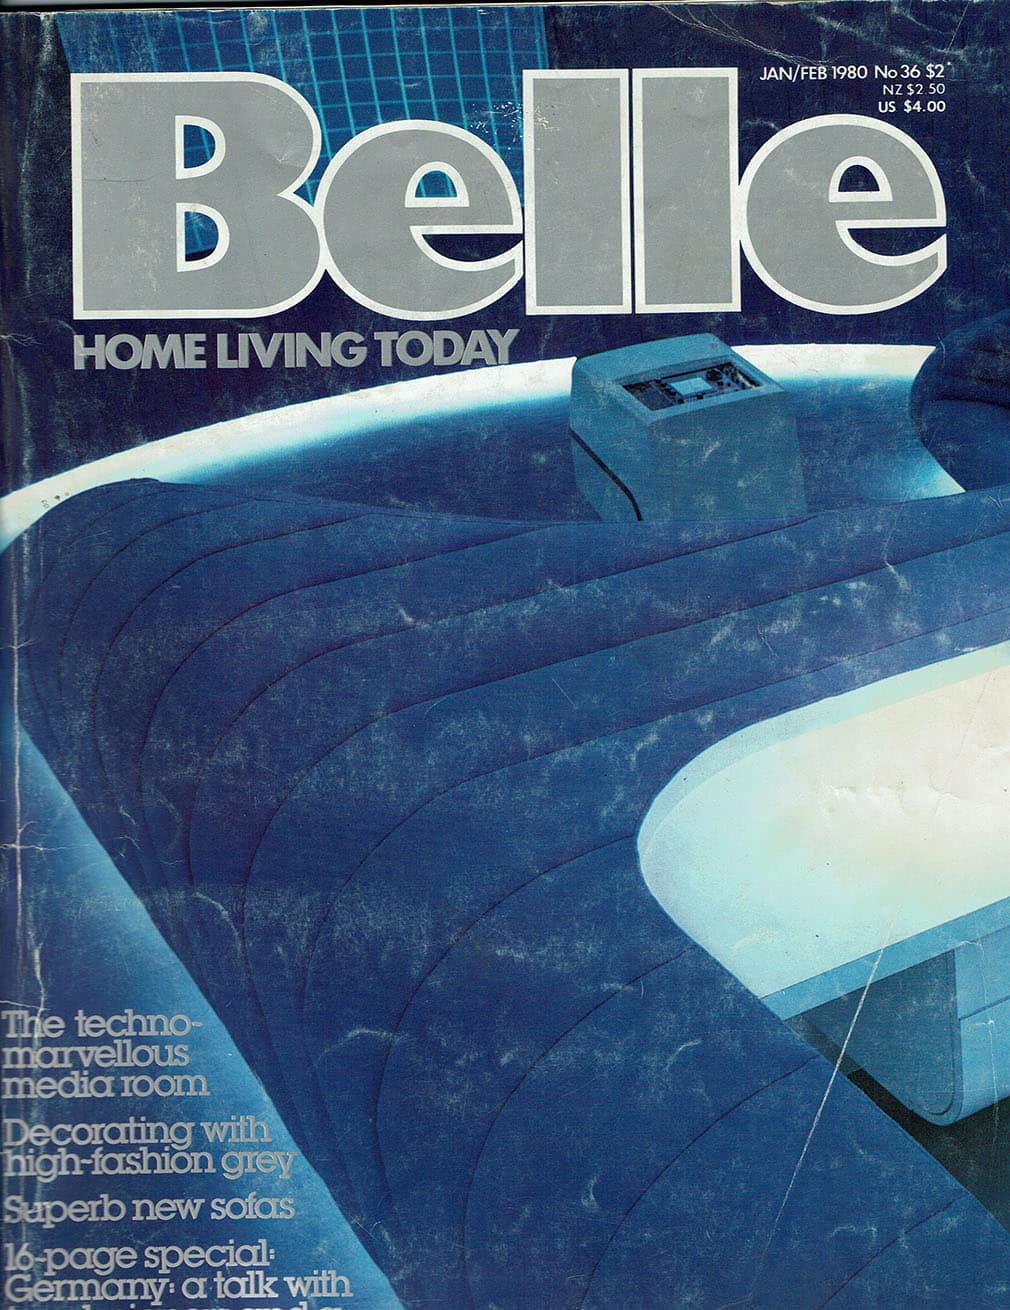 Bell Magazine cover, Jan/FEB 1980